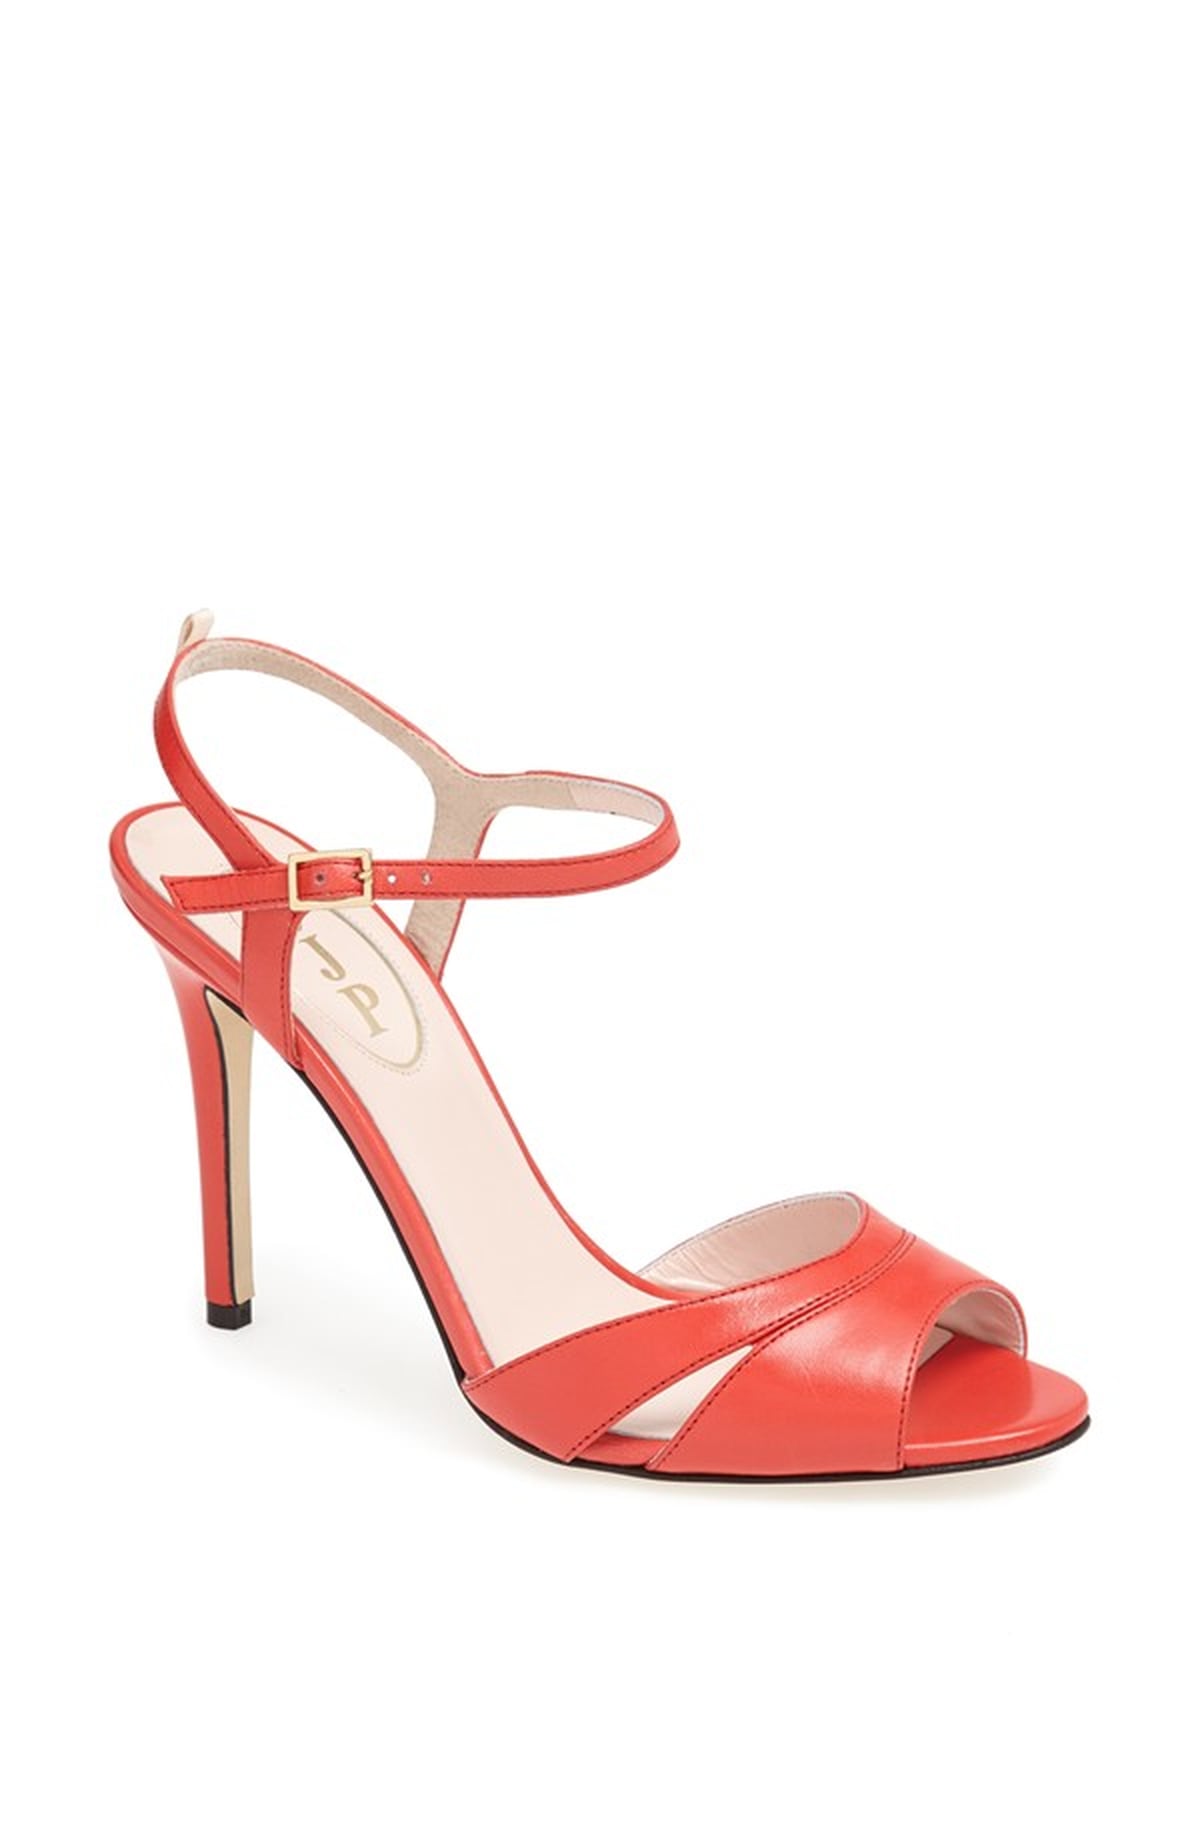 Sarah Jessica Parker Shoe Collection For Nordstrom | POPSUGAR Fashion